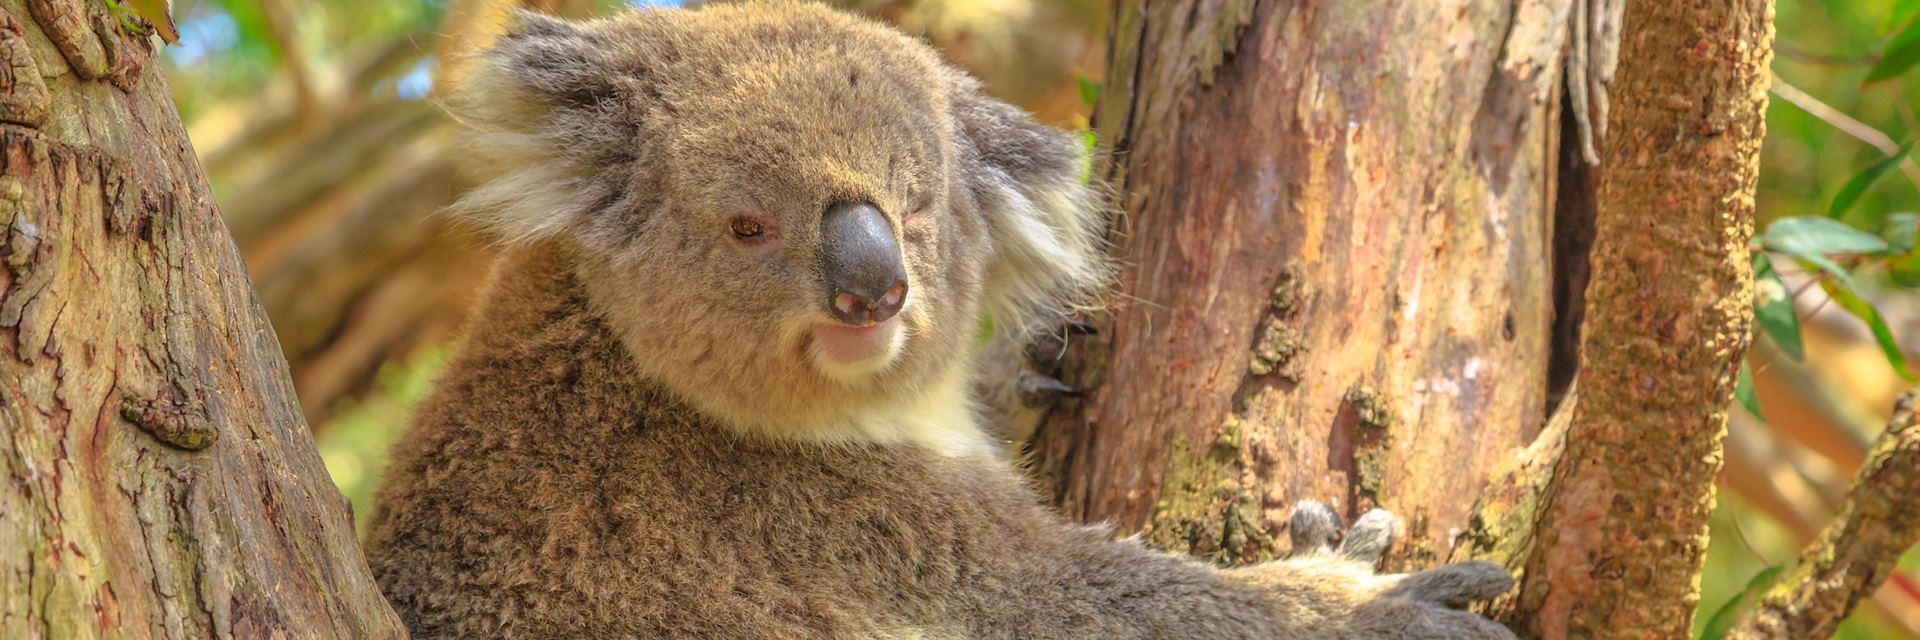 Koala, Phillip Island